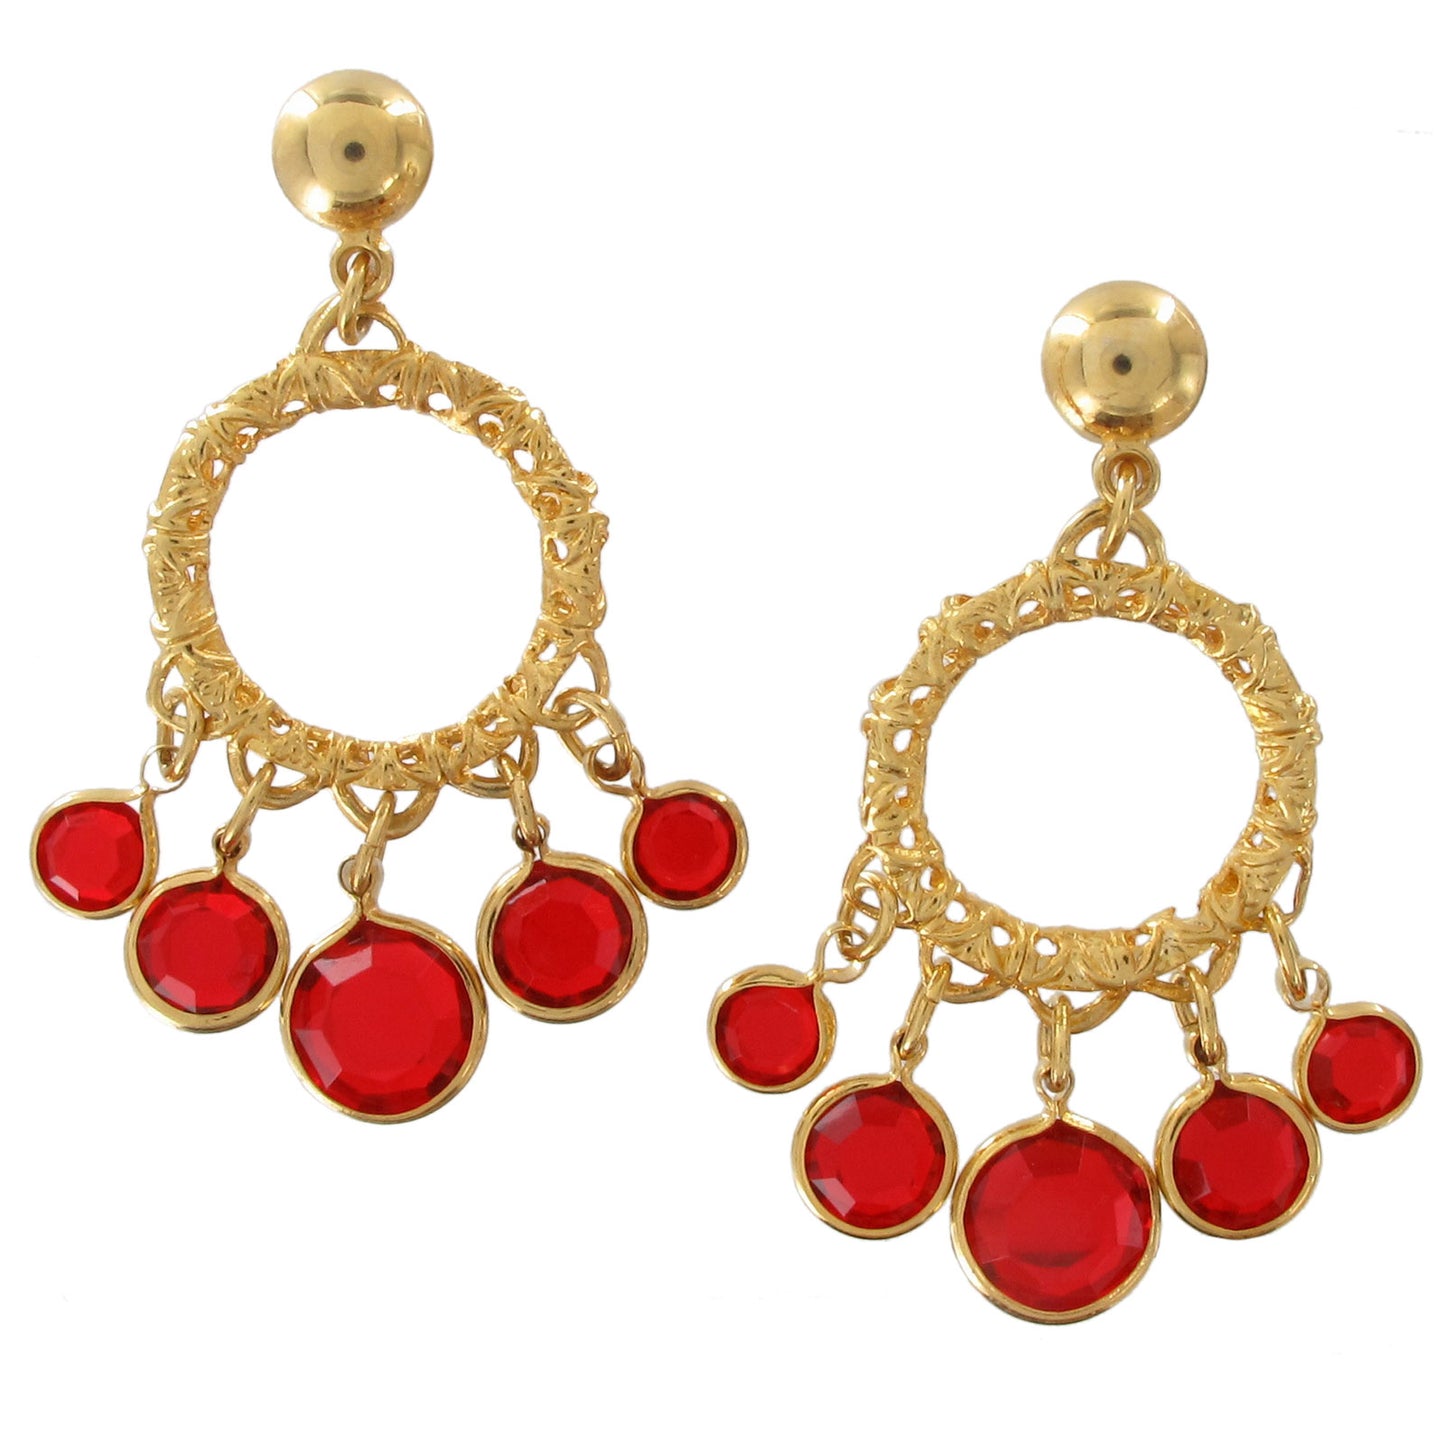 Pierced Earrings Chandelier Gold Tone Red Faux Crystal 1 1/2"